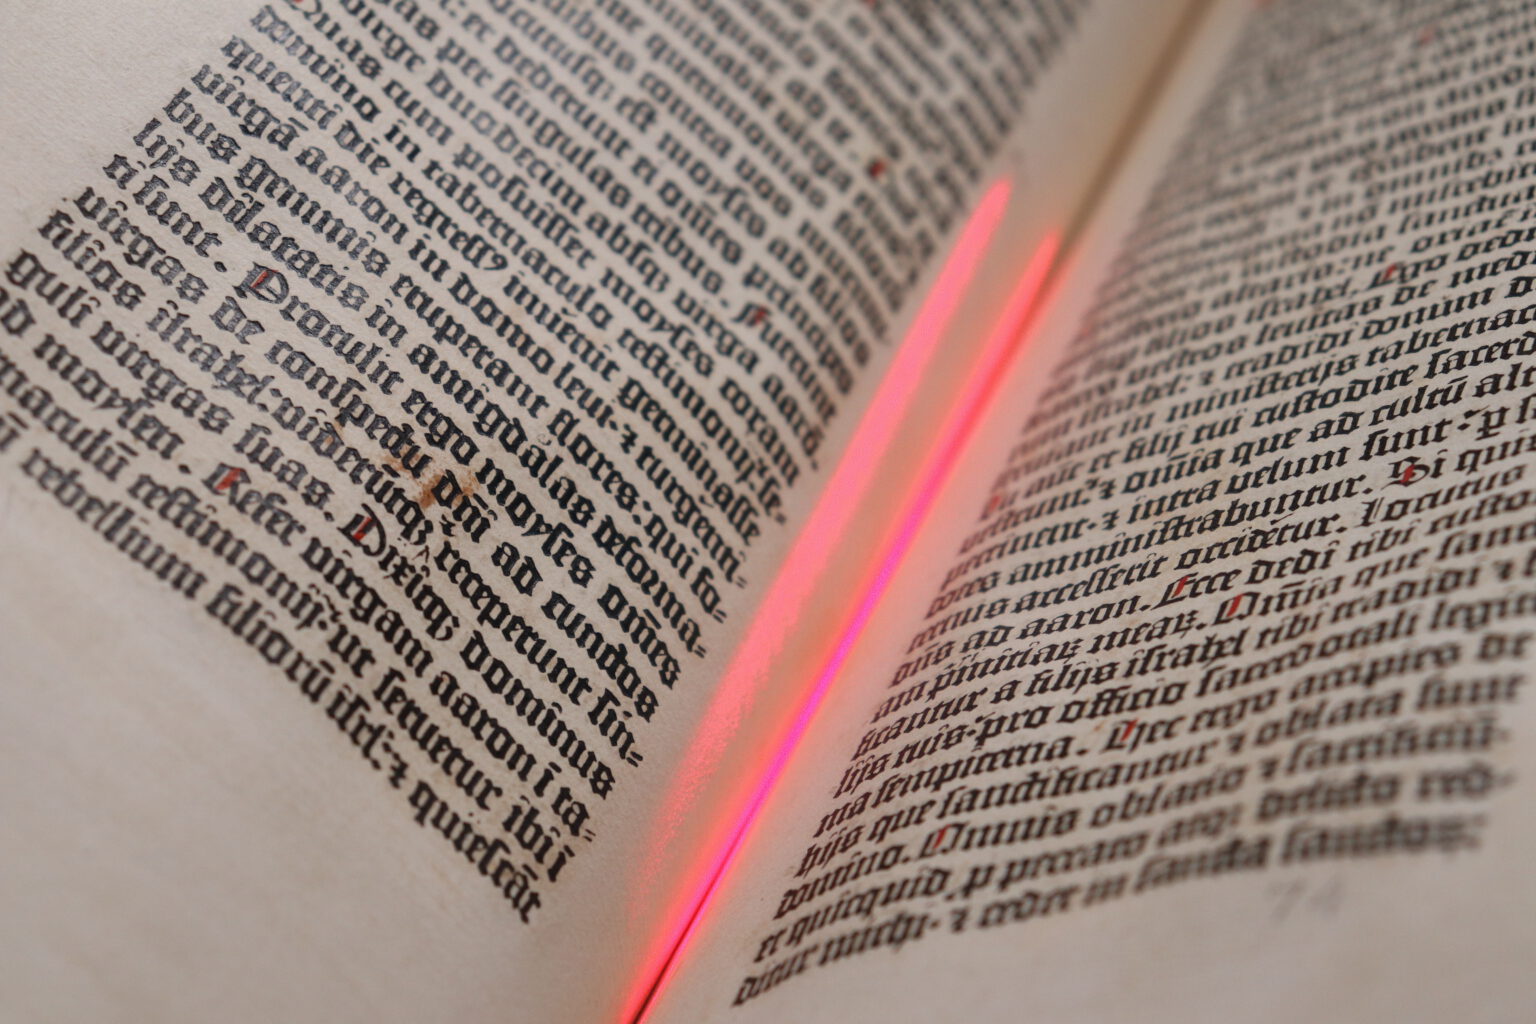 Die-Seiten-der-Gutenberg-Bibeln-im-Buchscanner-1-1536x1024.jpg